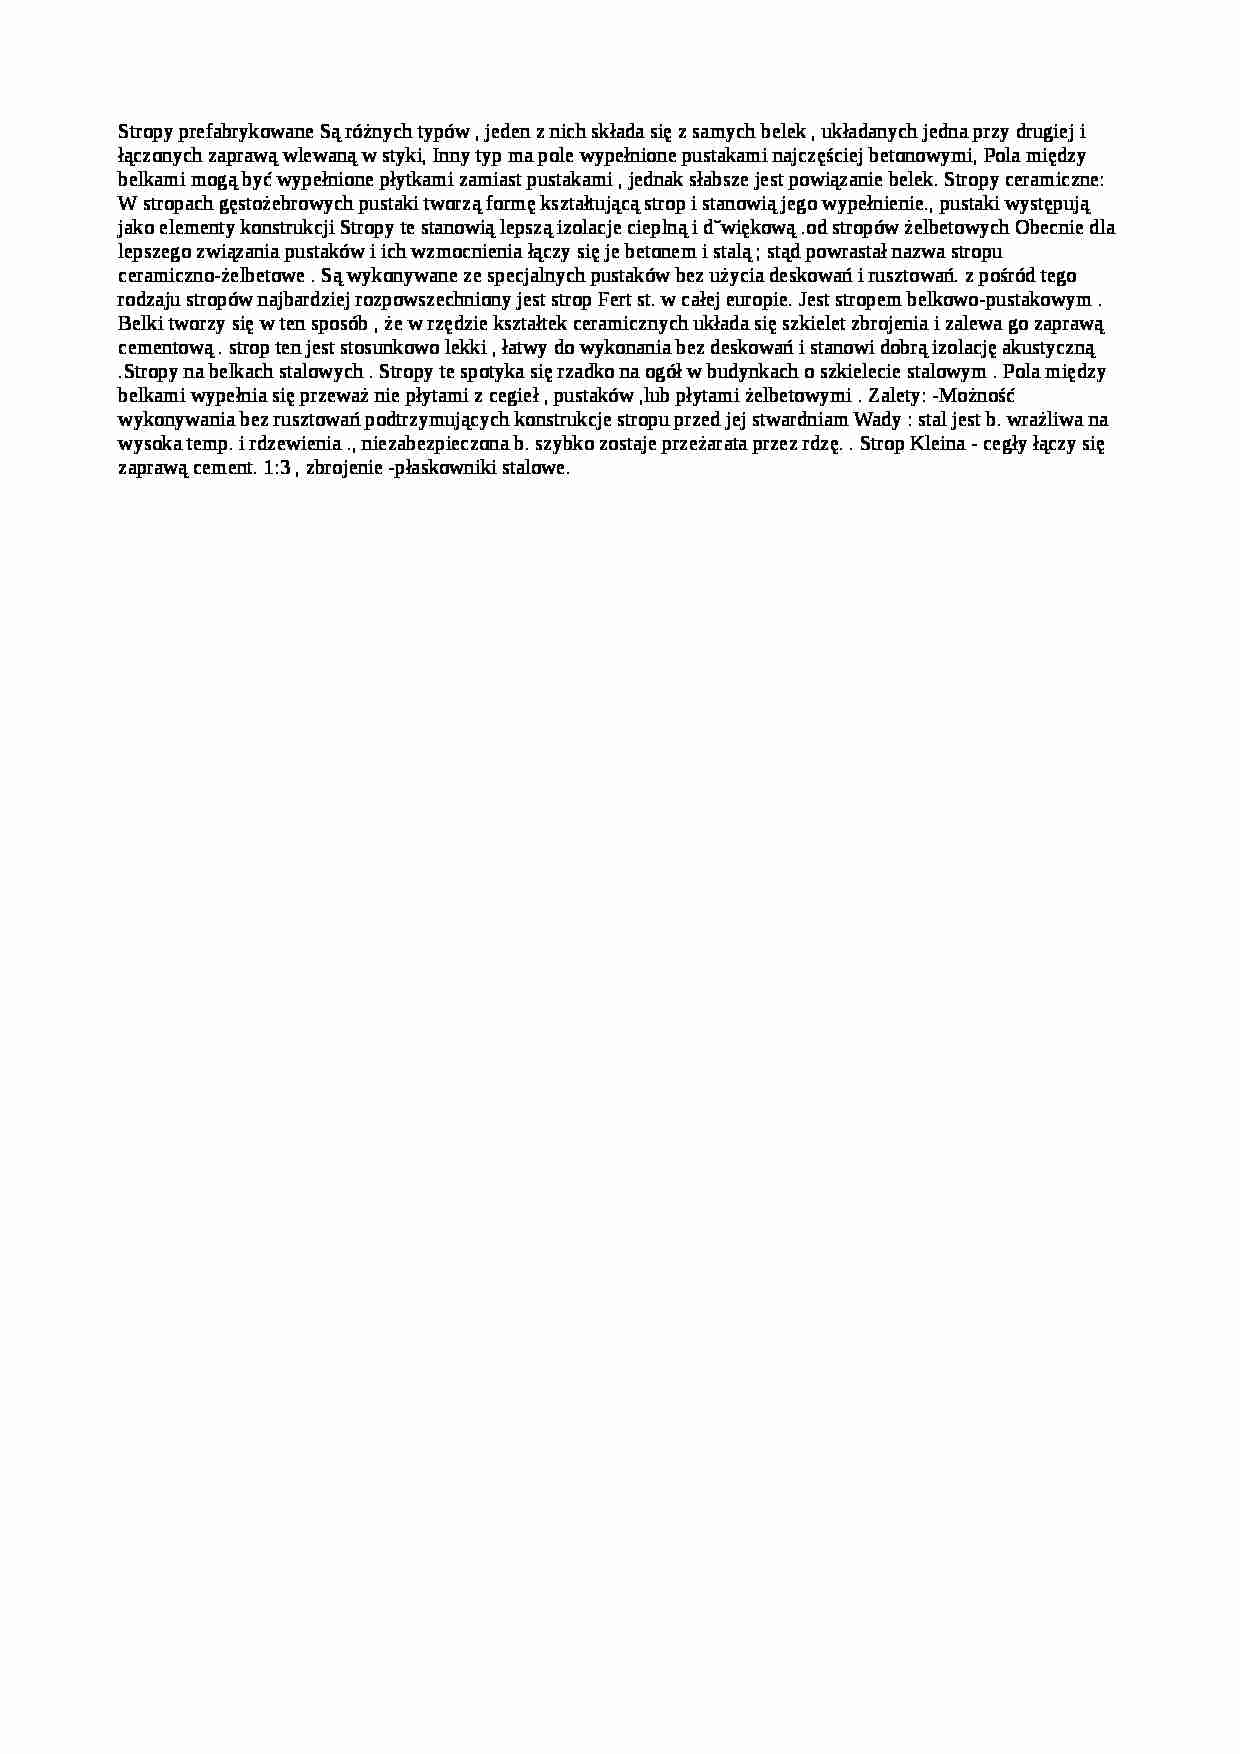 Stropy prefabrykowane-opracowanie - strona 1